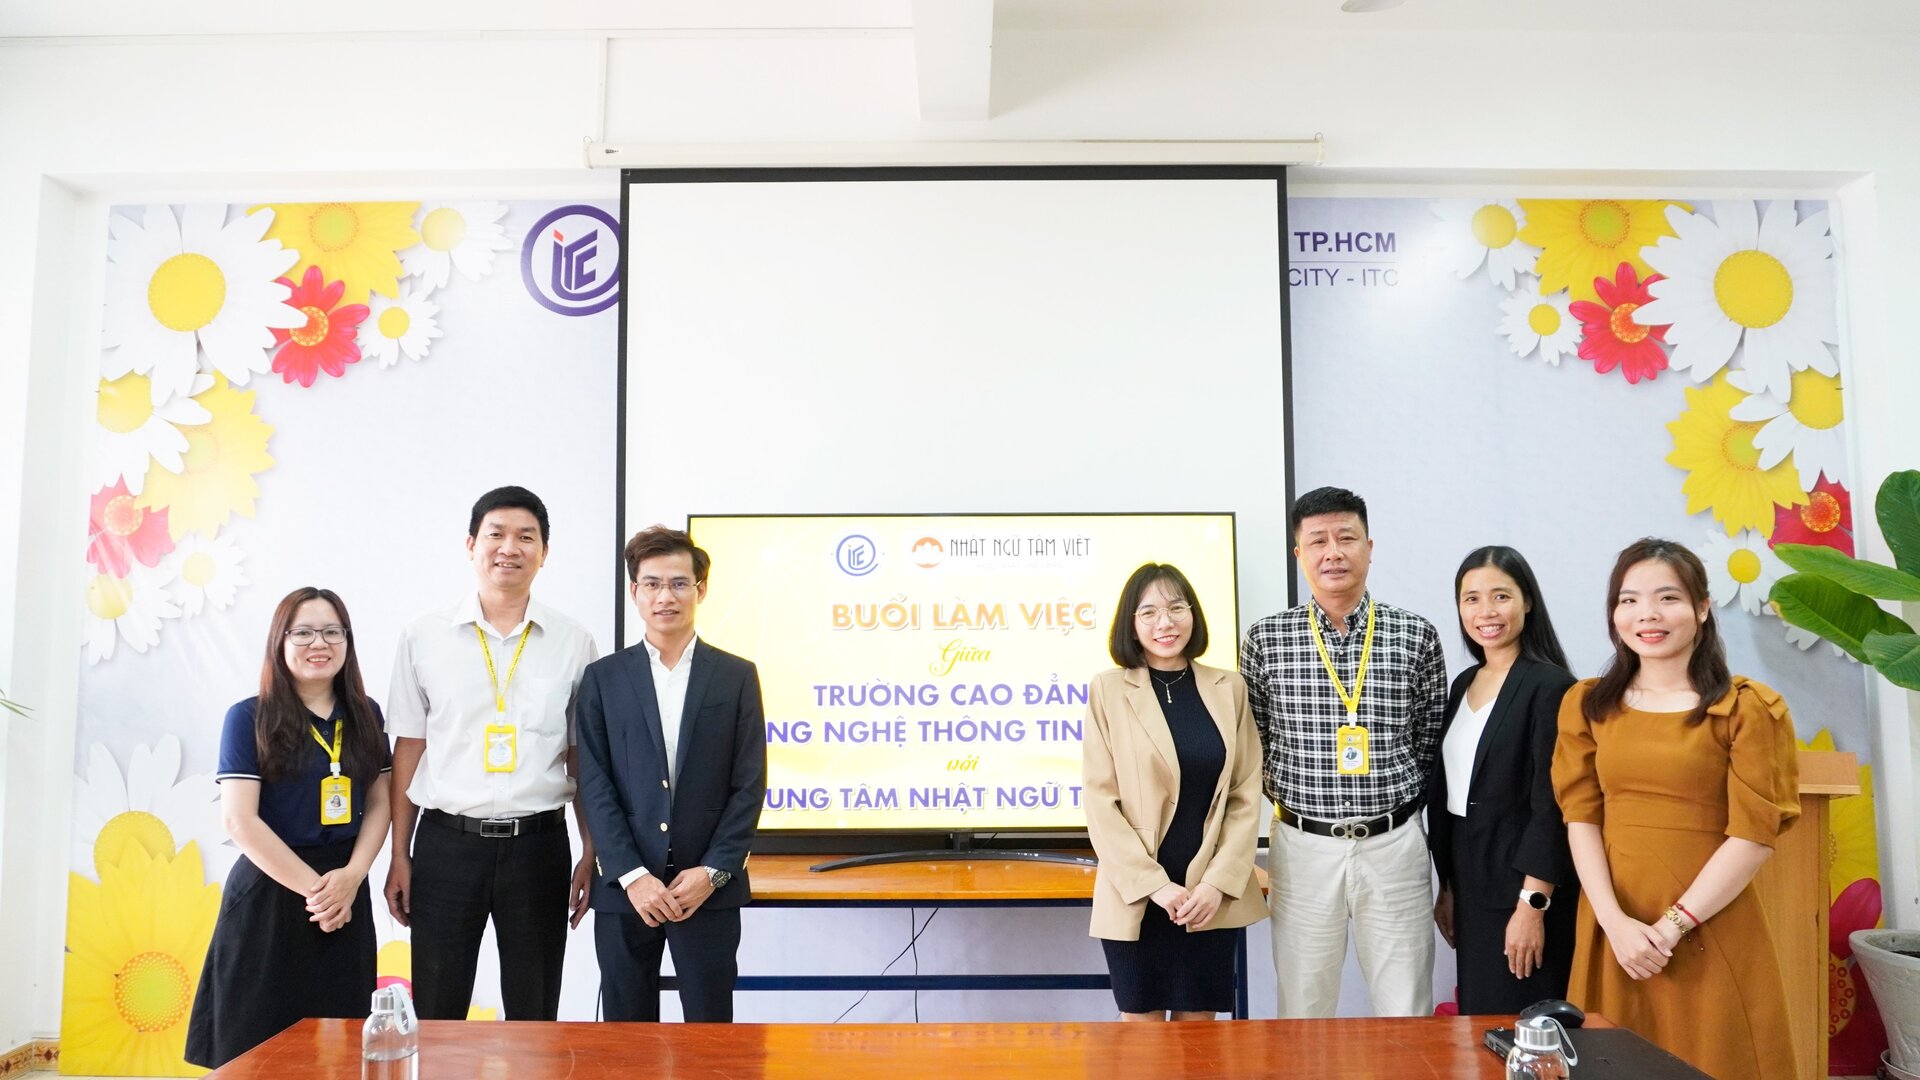 Buổi làm việc giữa Trường ITC và Trung tâm Nhật ngữ Tâm Việt